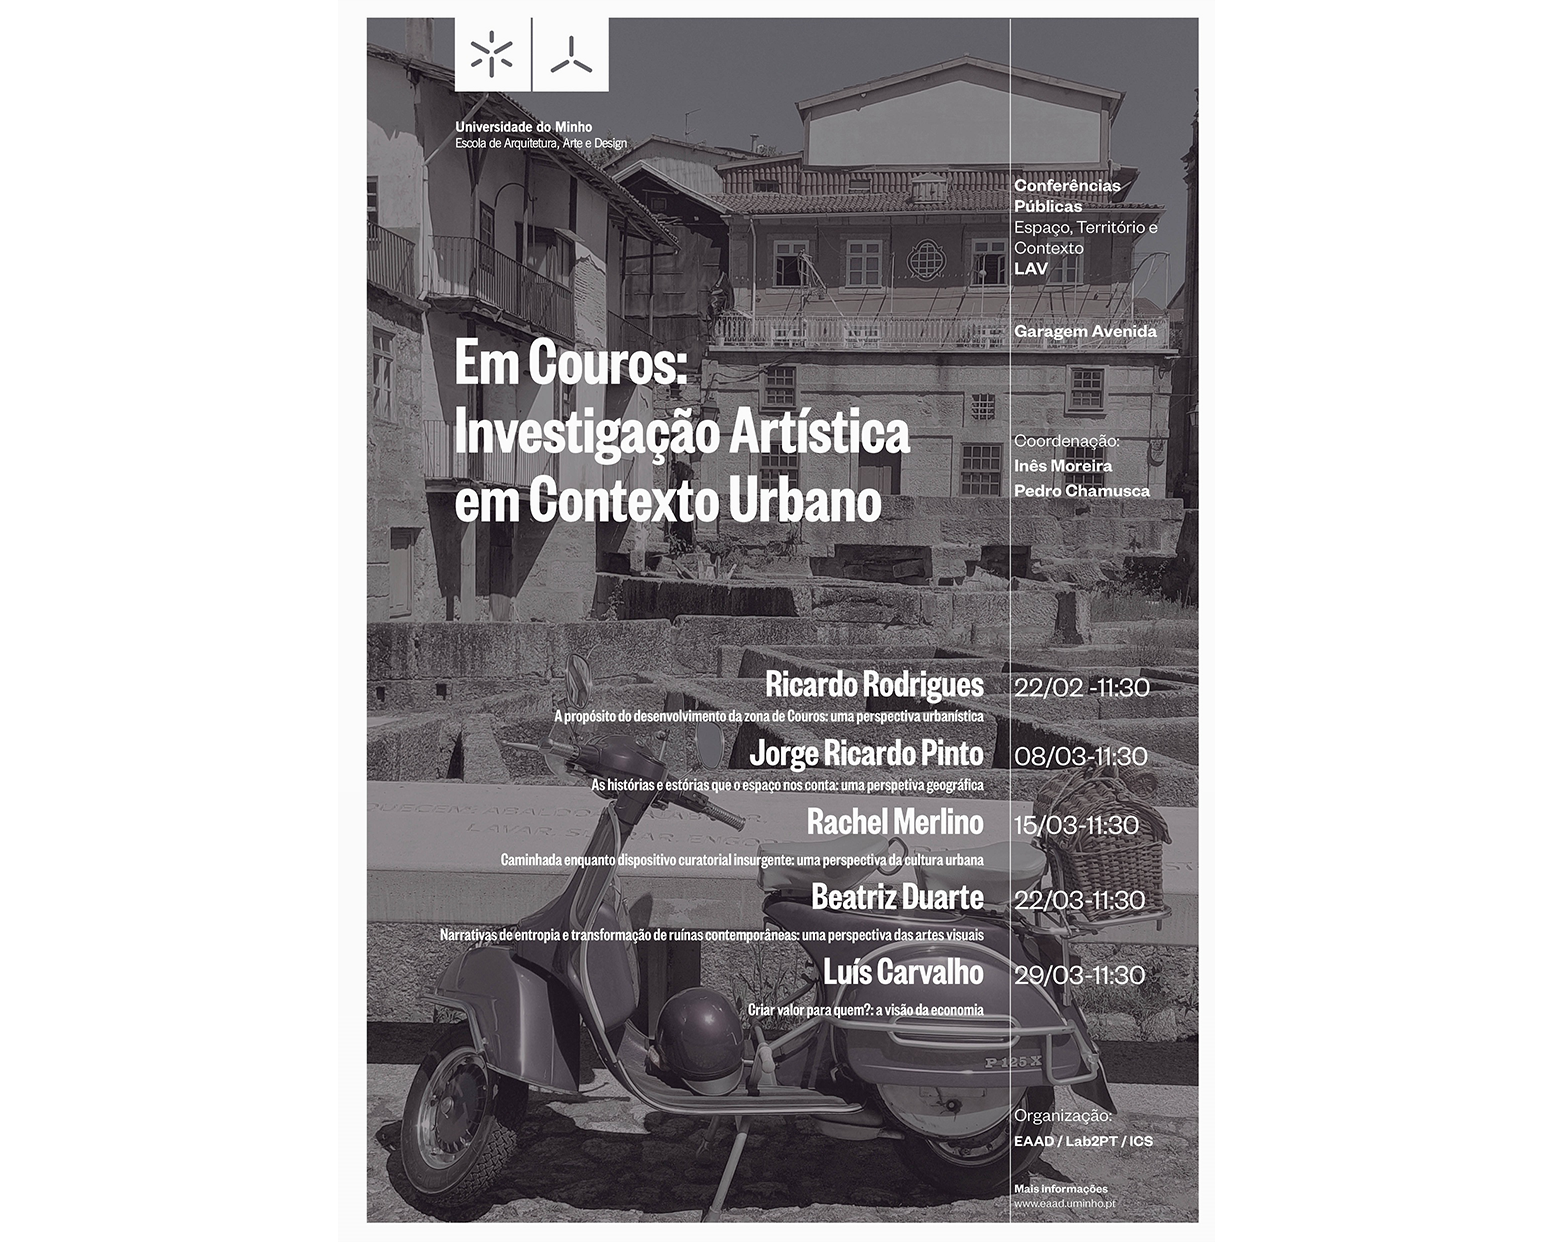 Conferences Cycle "Em Couros: investigação artística em contexto urbano" image